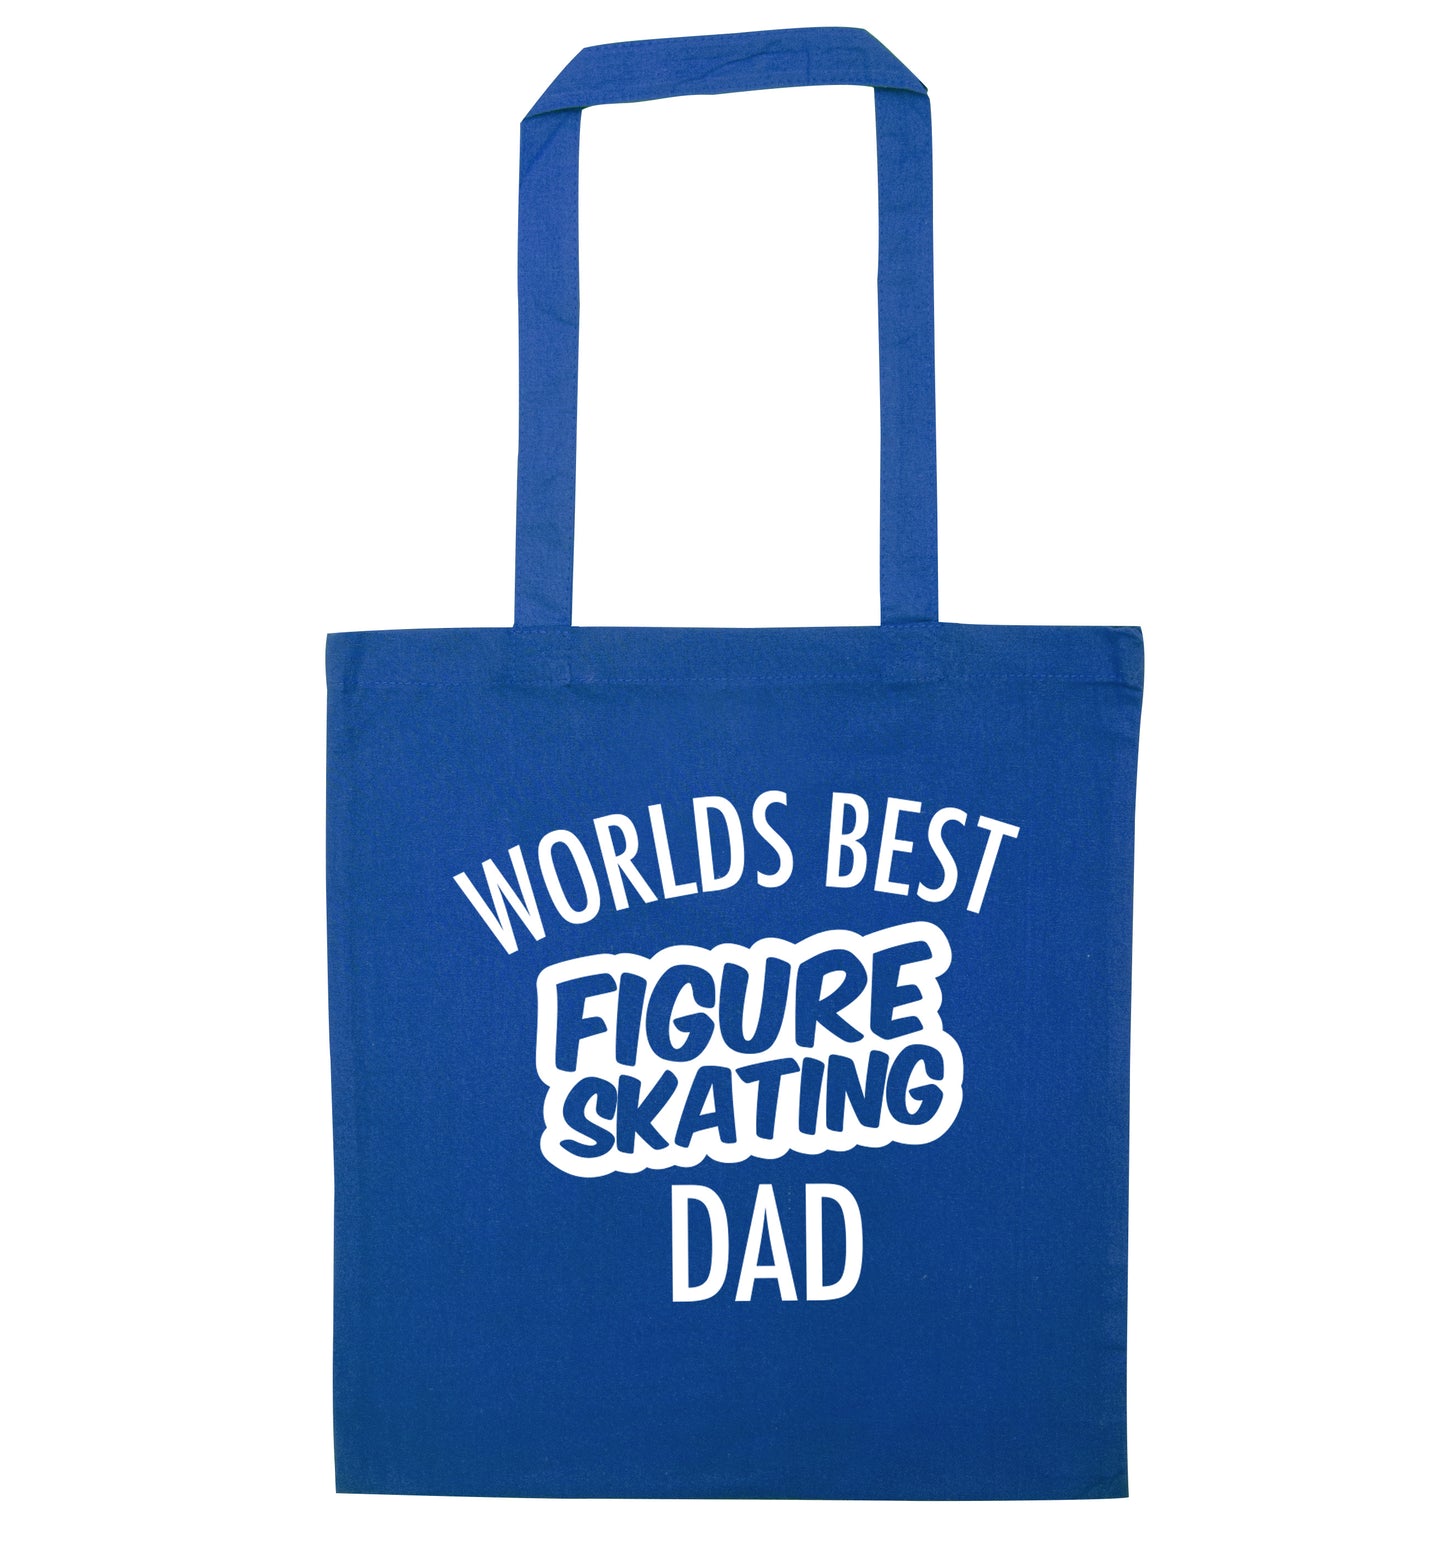 Worlds best figure skating dad blue tote bag